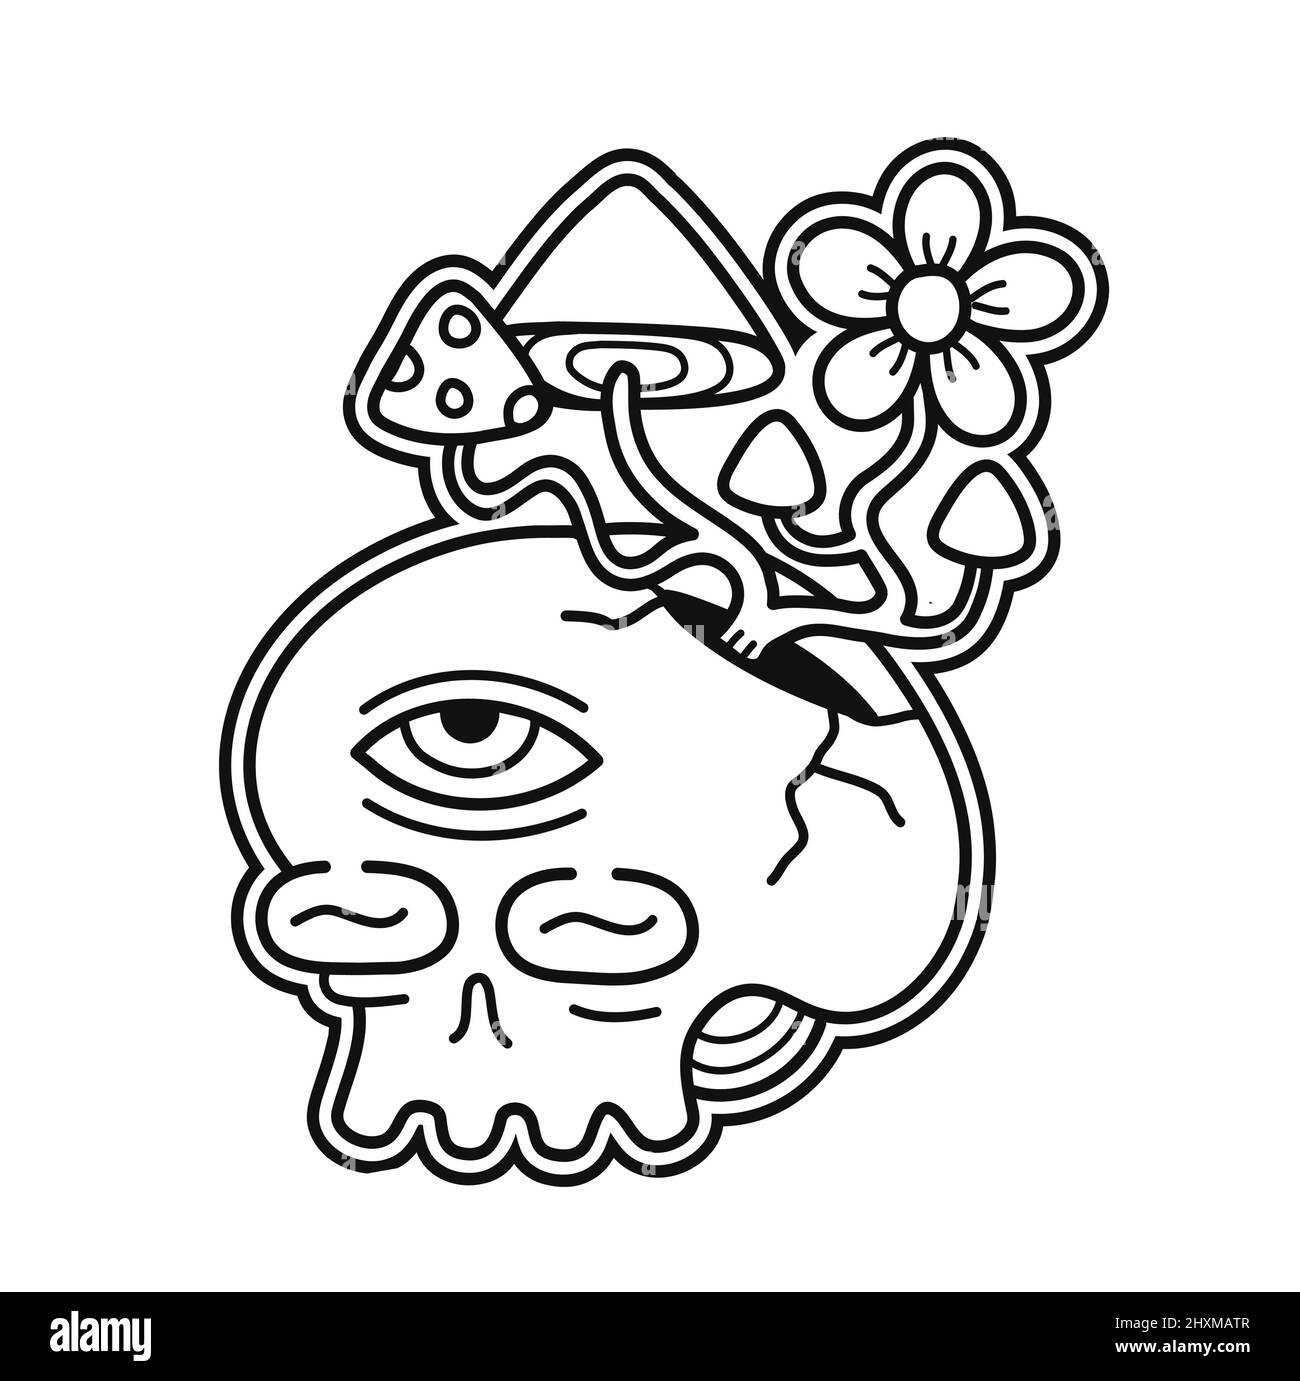 Totenkopf mit Mahic Pilze t-Shirt Print Design.Vector Linie Kunstseite zum Ausmalen Buch.Trippy Schädel, magische Pilze wachsen, psychedelischen Druck für T-Shirt, Poster, Aufkleber, Logo-Konzept Stock Vektor